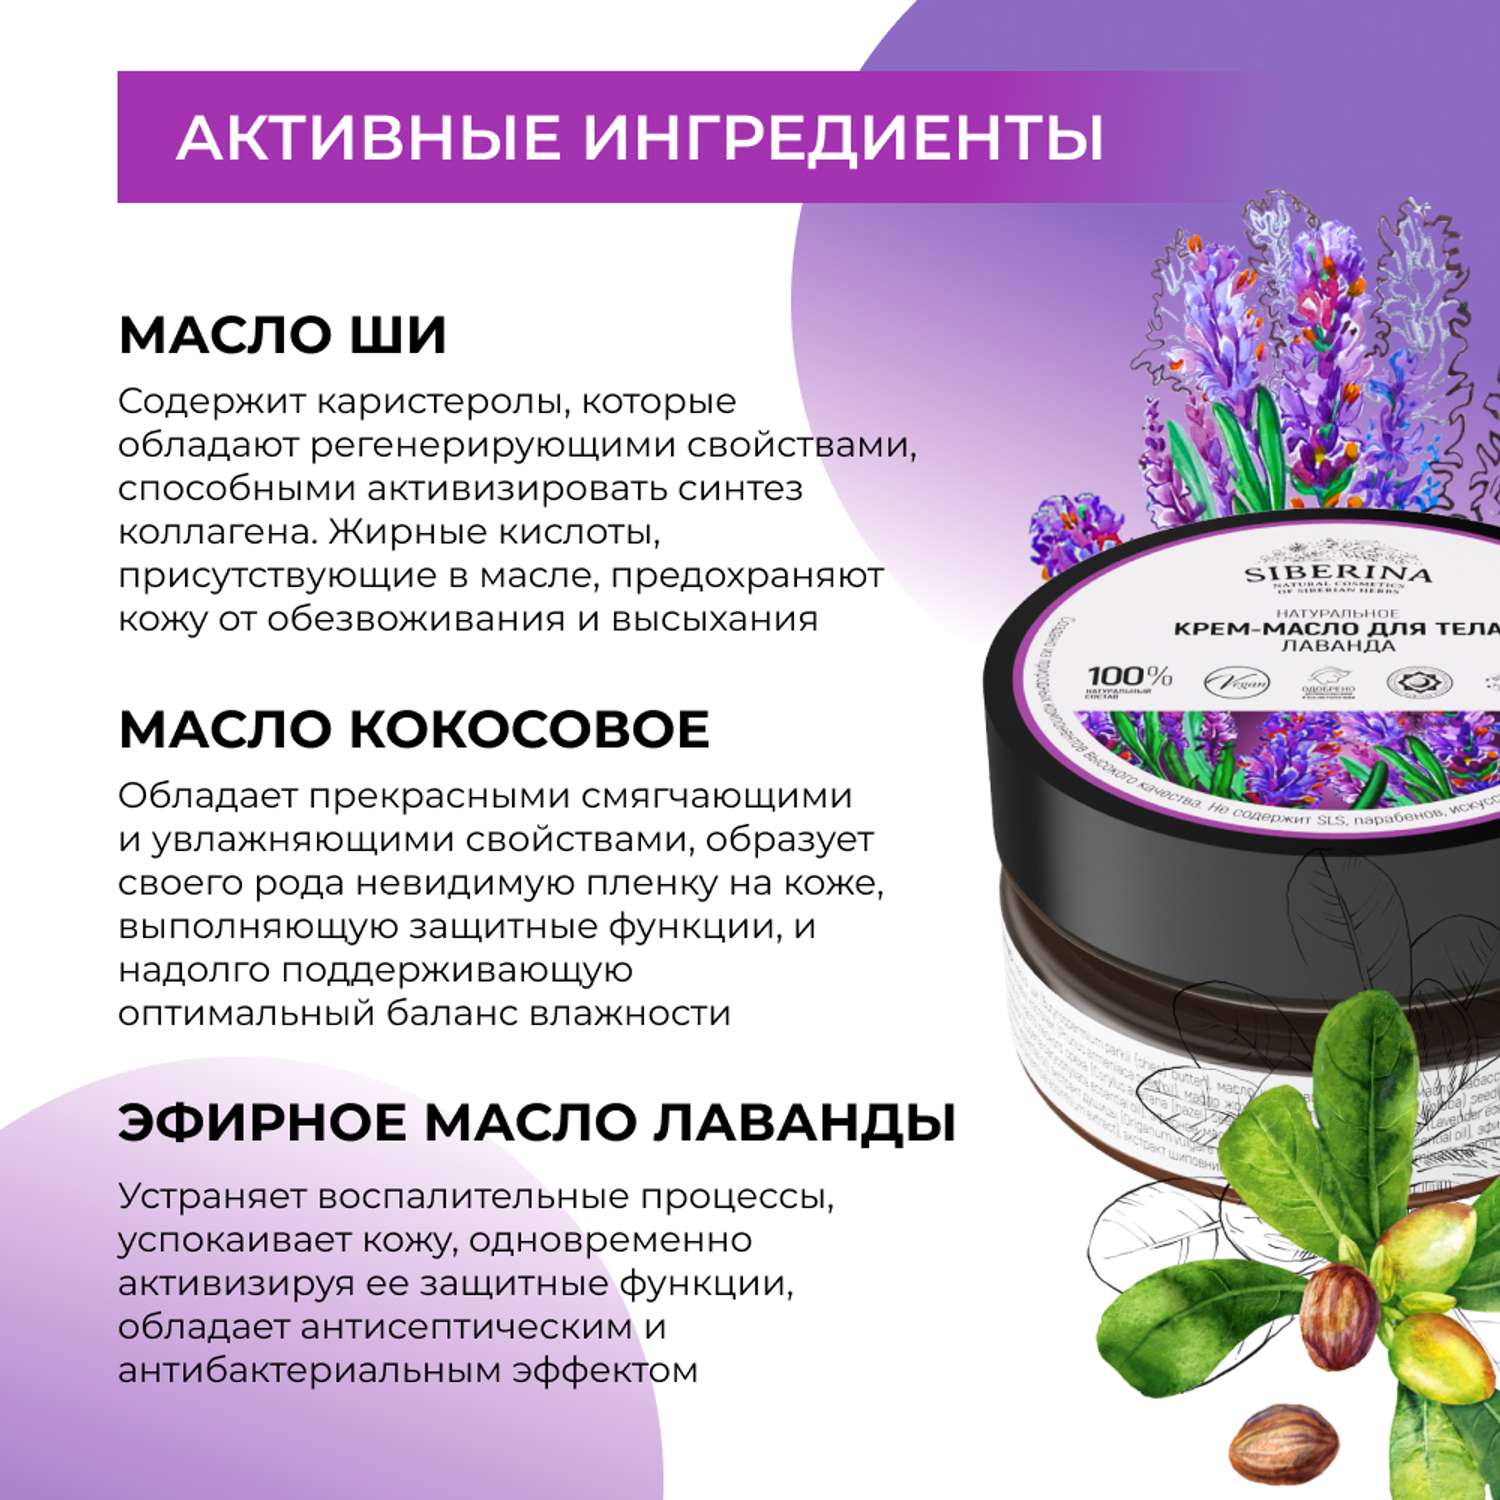 Крем-масло Siberina натуральное «Лаванда» для тела успокаивающее 60 мл - фото 4